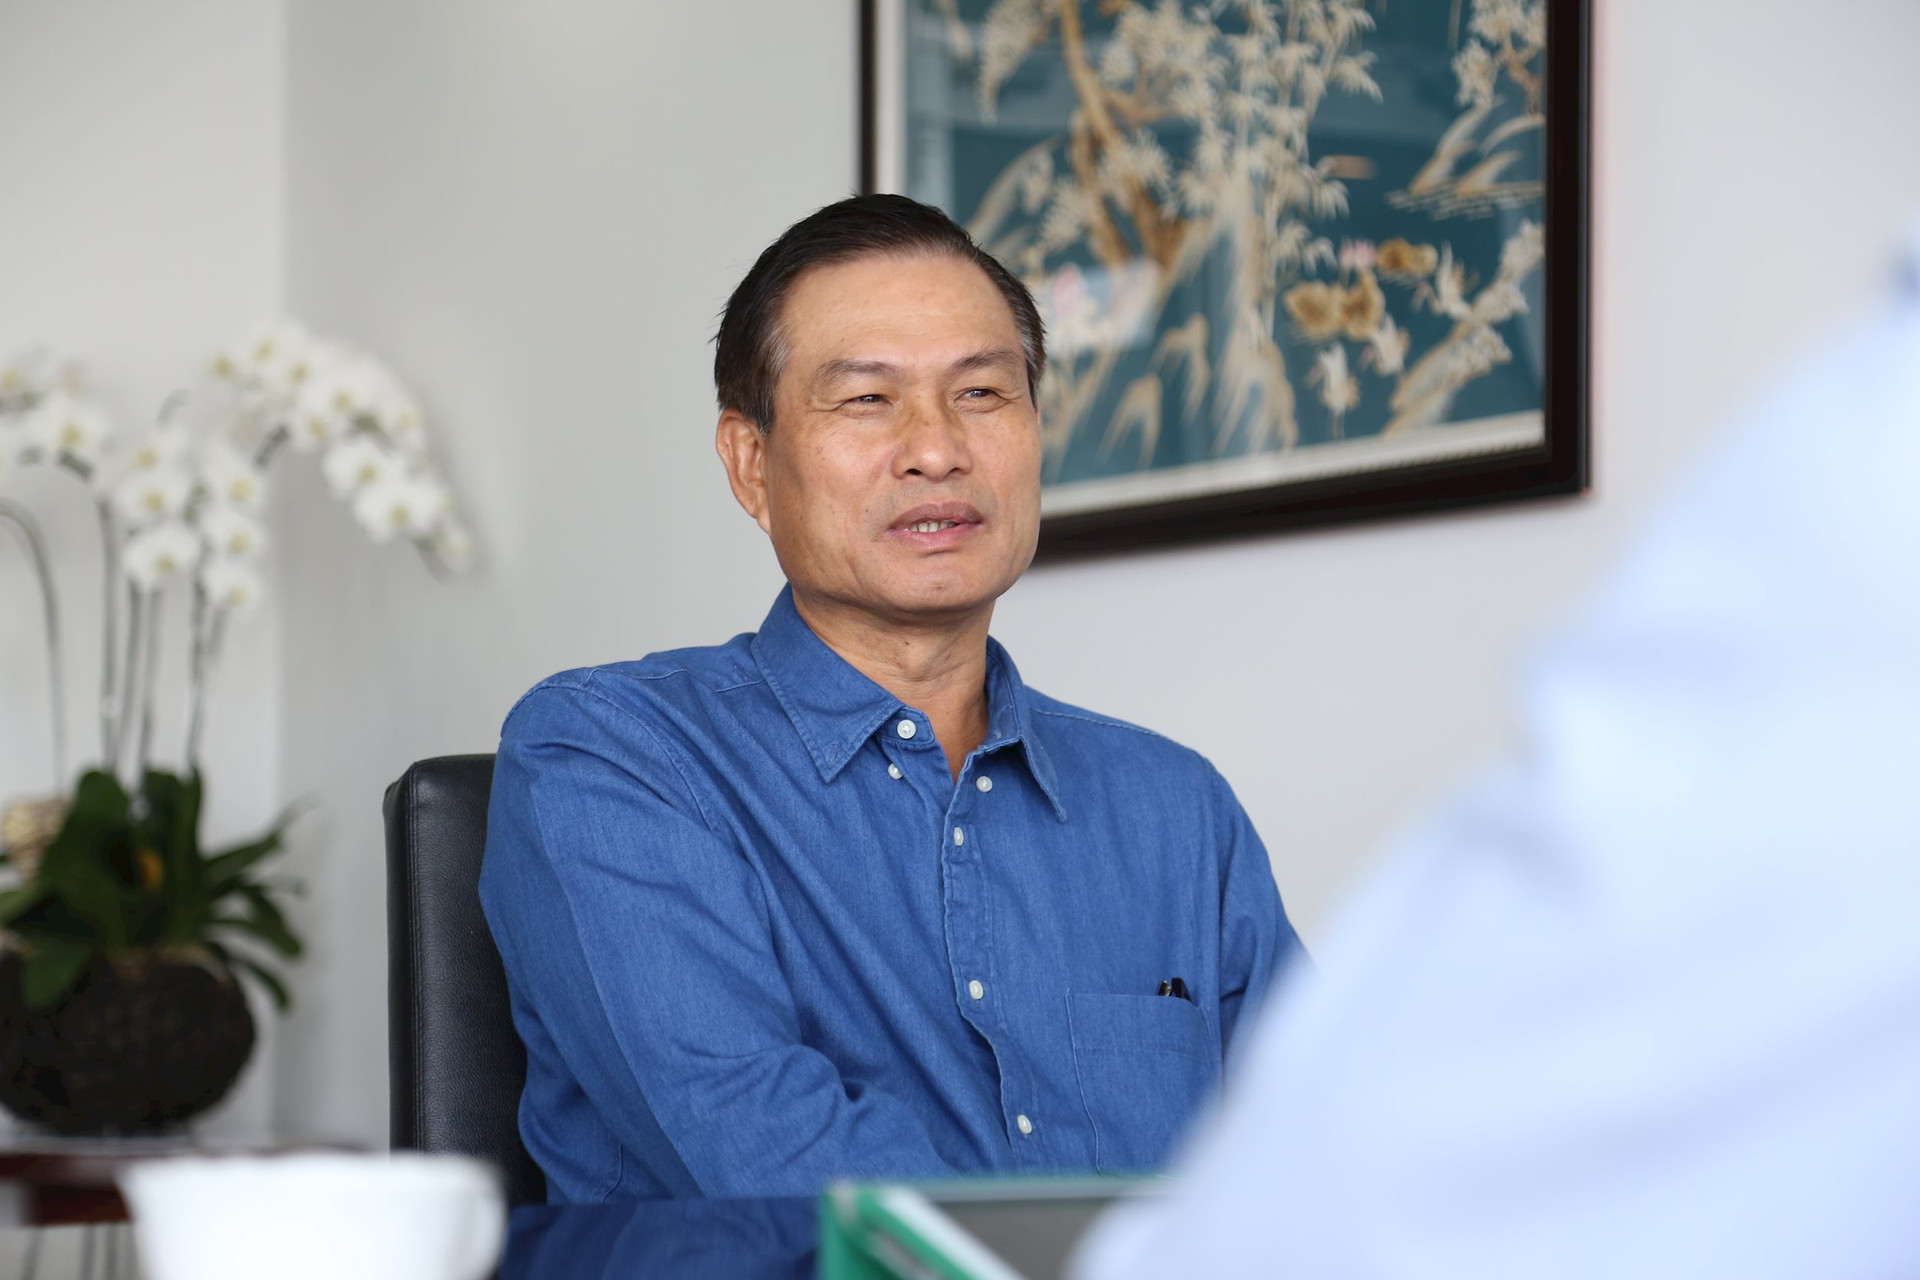 Chủ tịch Nguyễn Bá Dương gửi tâm thư cho cán bộ nhân viên, khẳng định 'hứa được - làm được' - Ảnh 1.